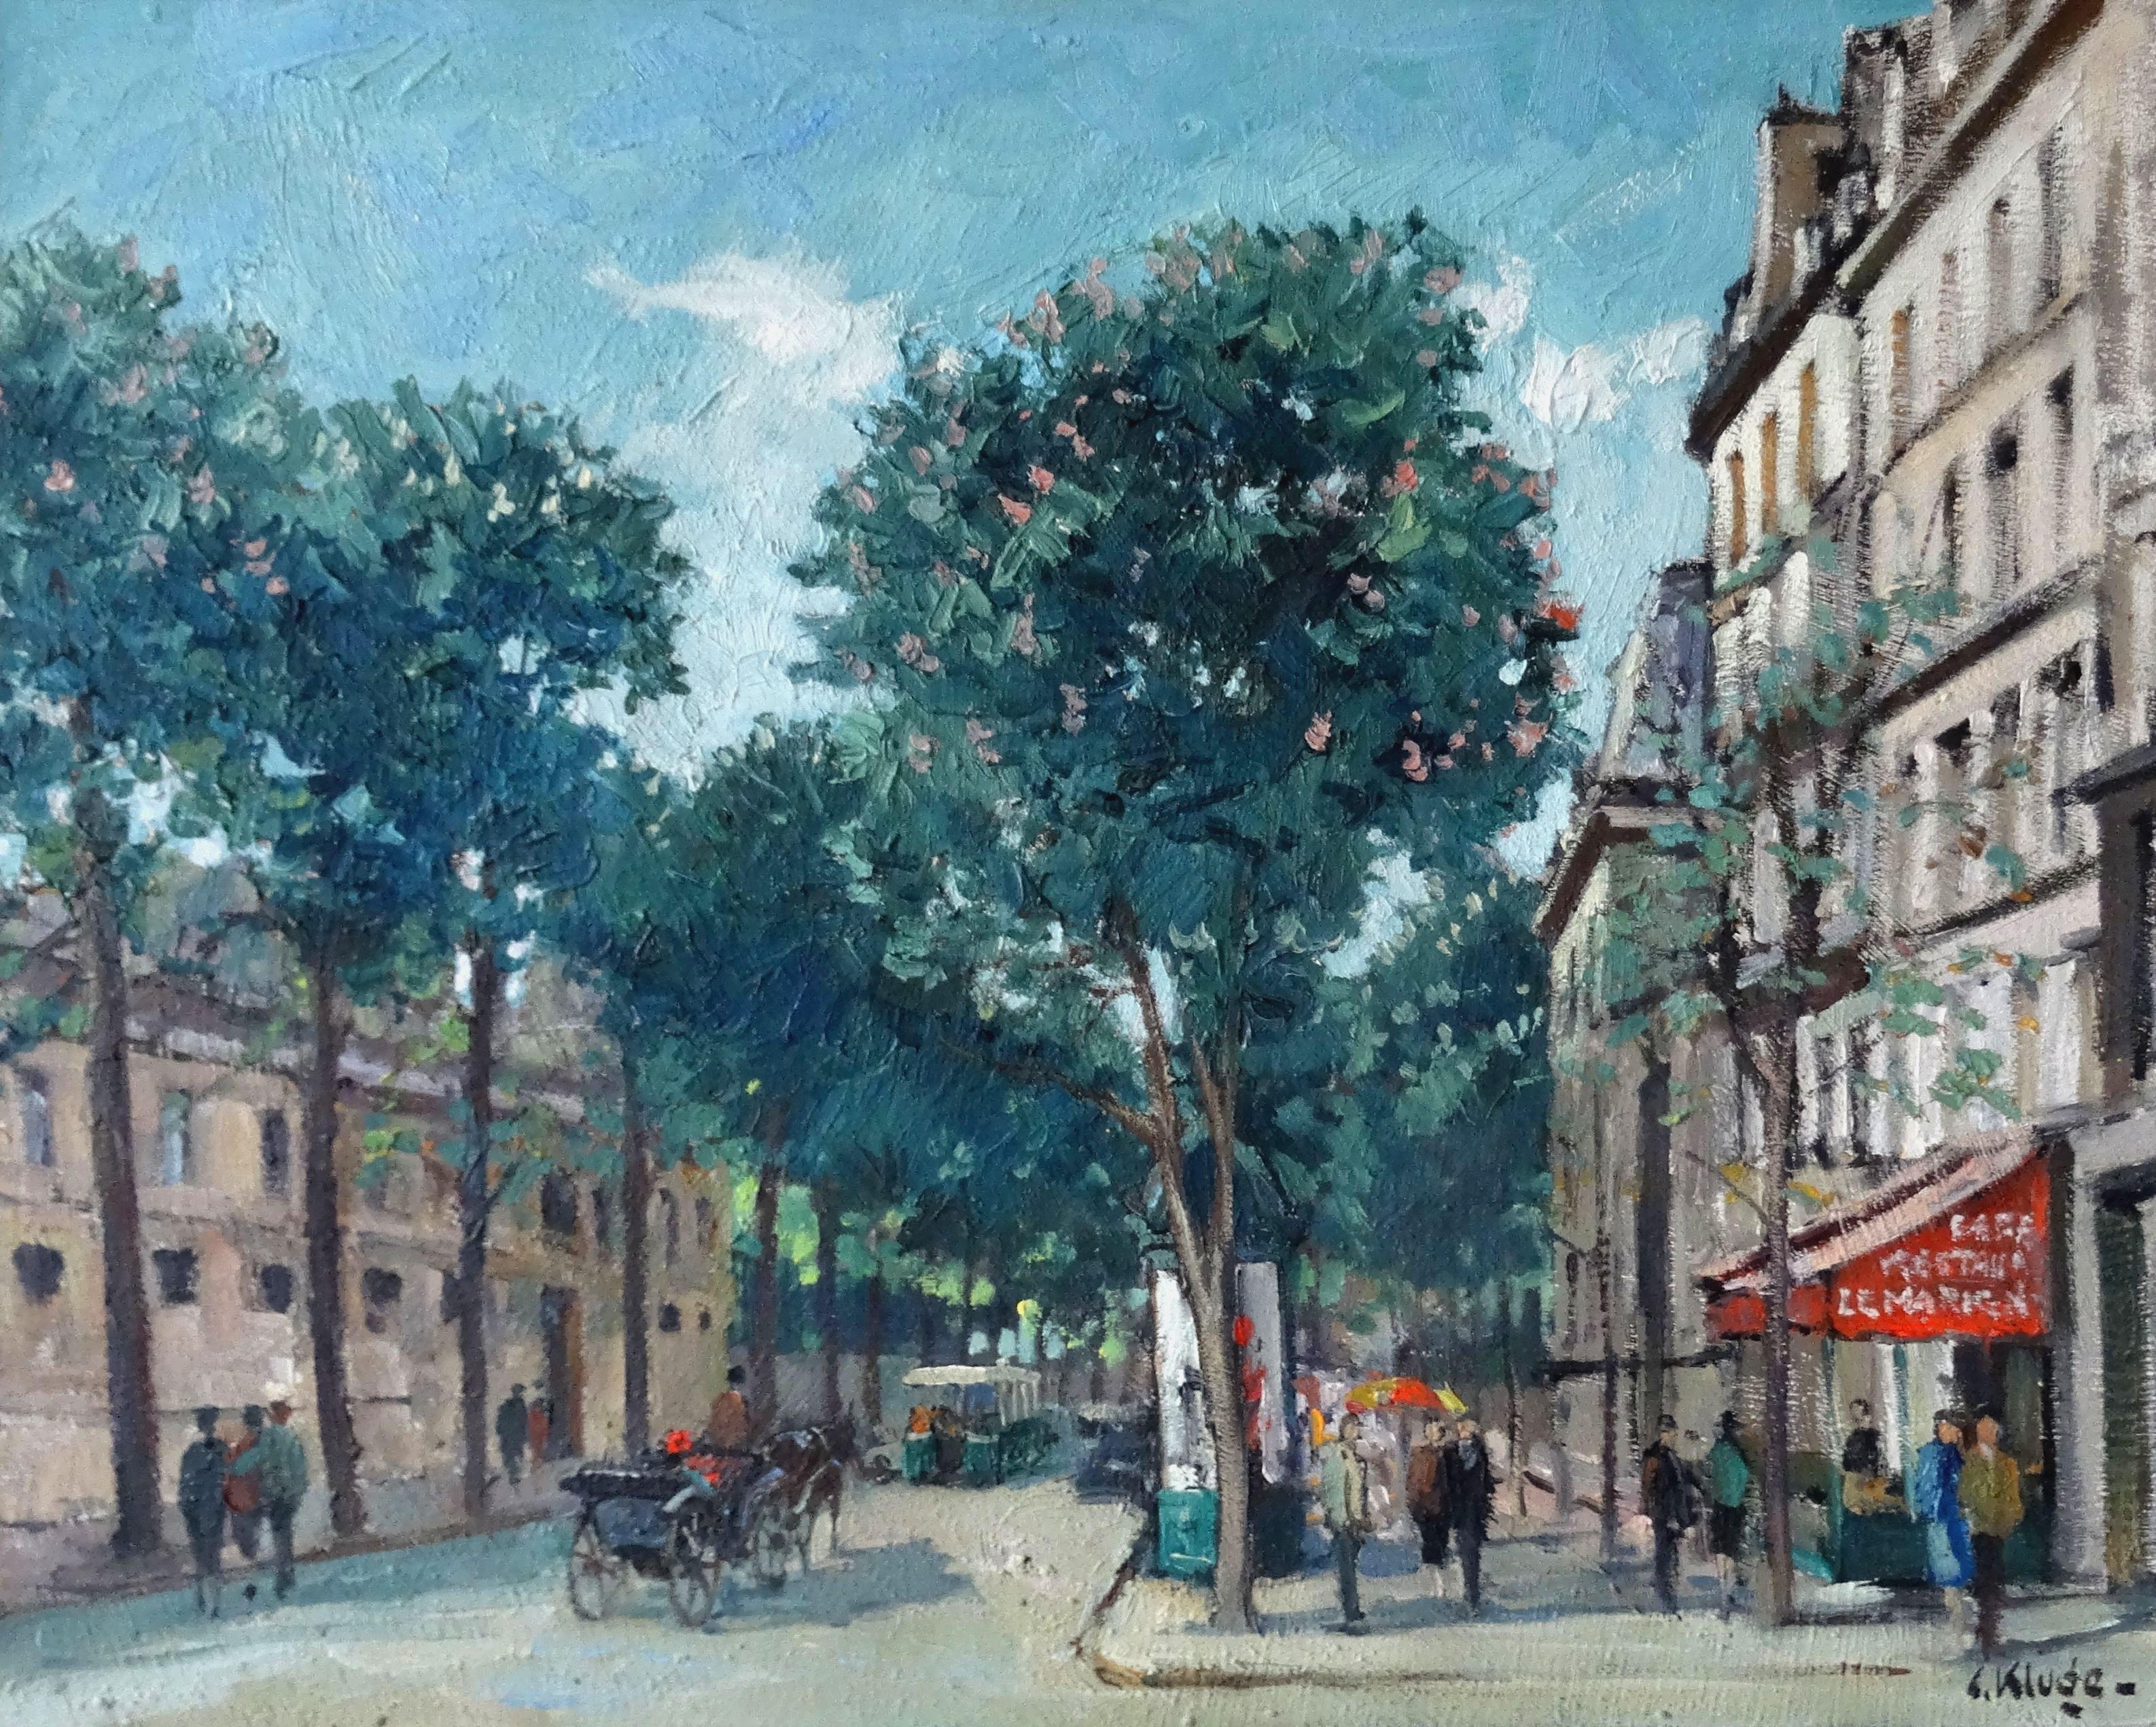 Place Beauvau. Paris. Oil on canvas, 73, 5x92 cm - Impressionist Painting by Constantine Kluge